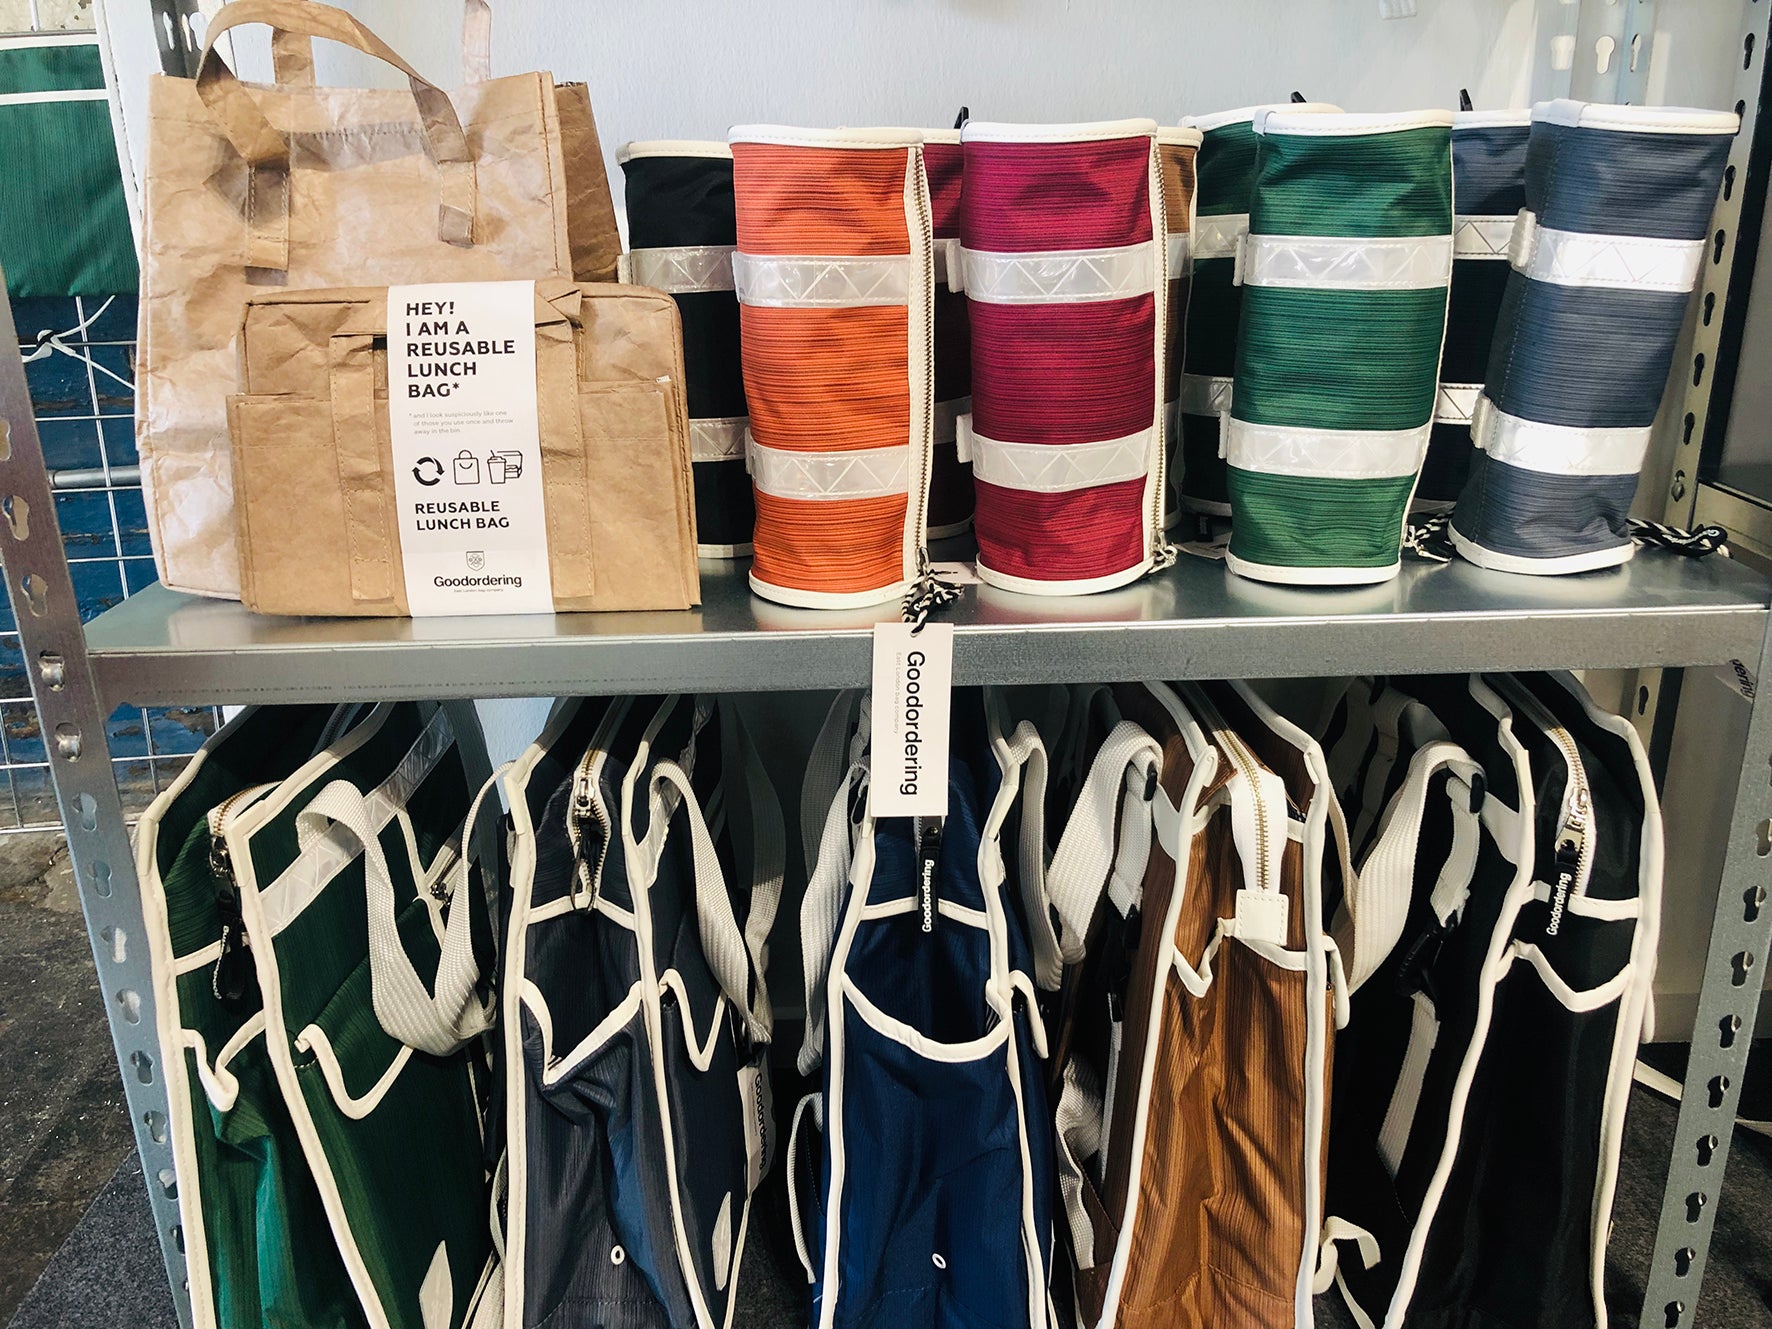 Goodordering bags at the London Design Fair 2019